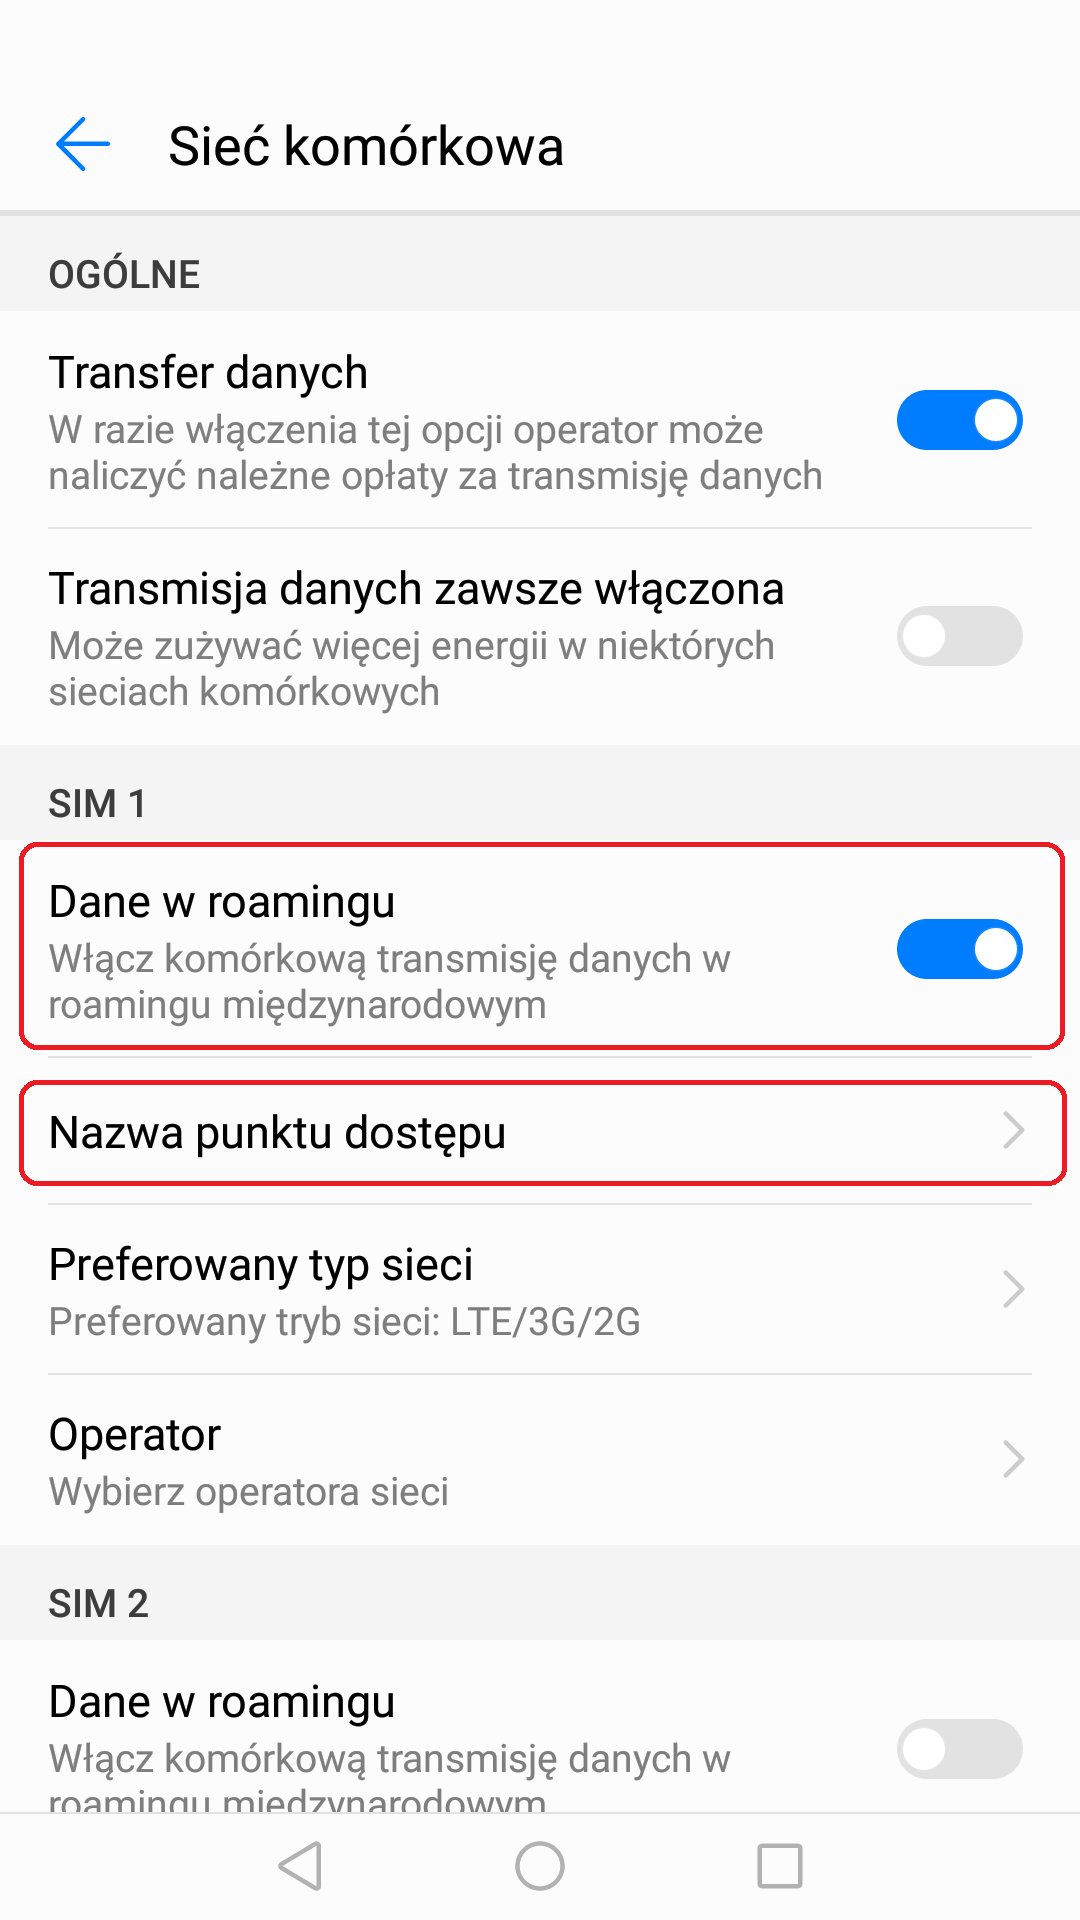 Włącz Dane w roamingu, a następnie kliknij pozycję Nazwa punktu dostępu